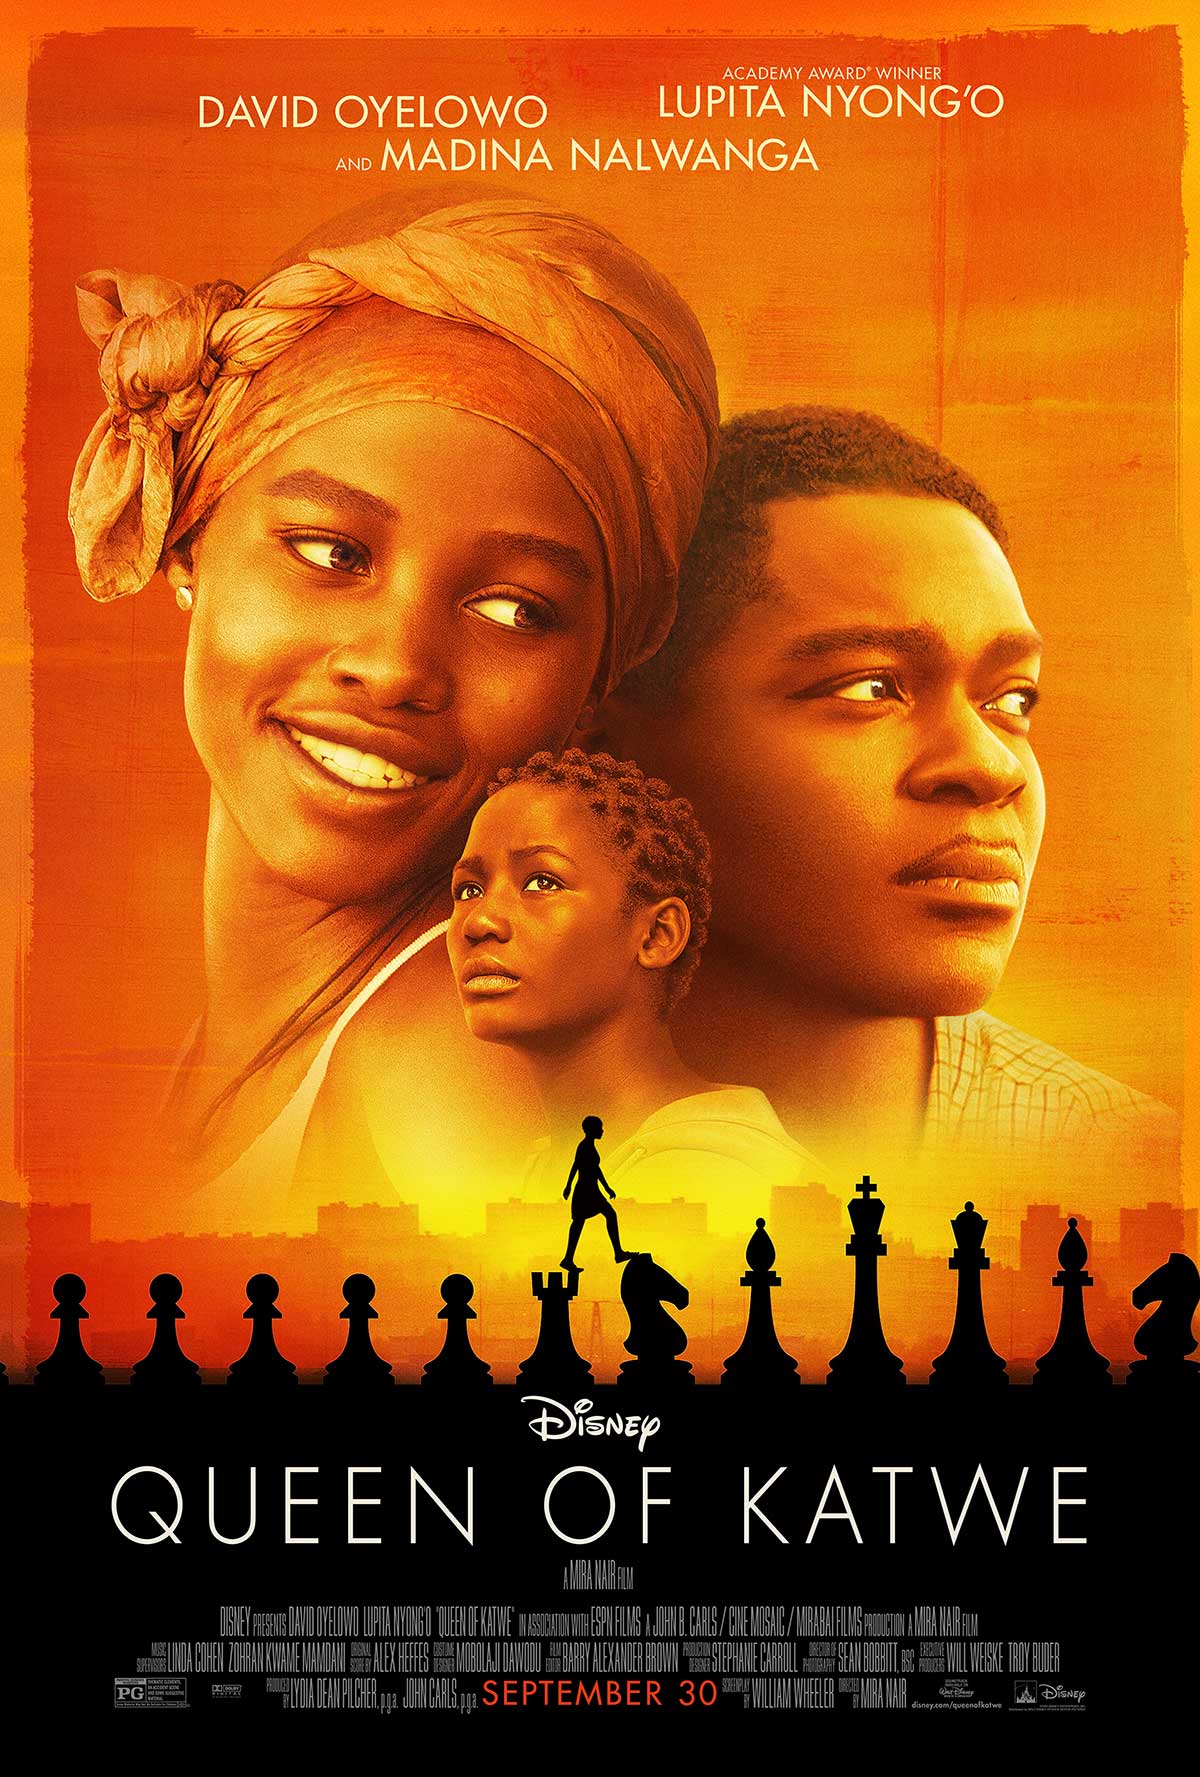 Disney's Queen of Katwe